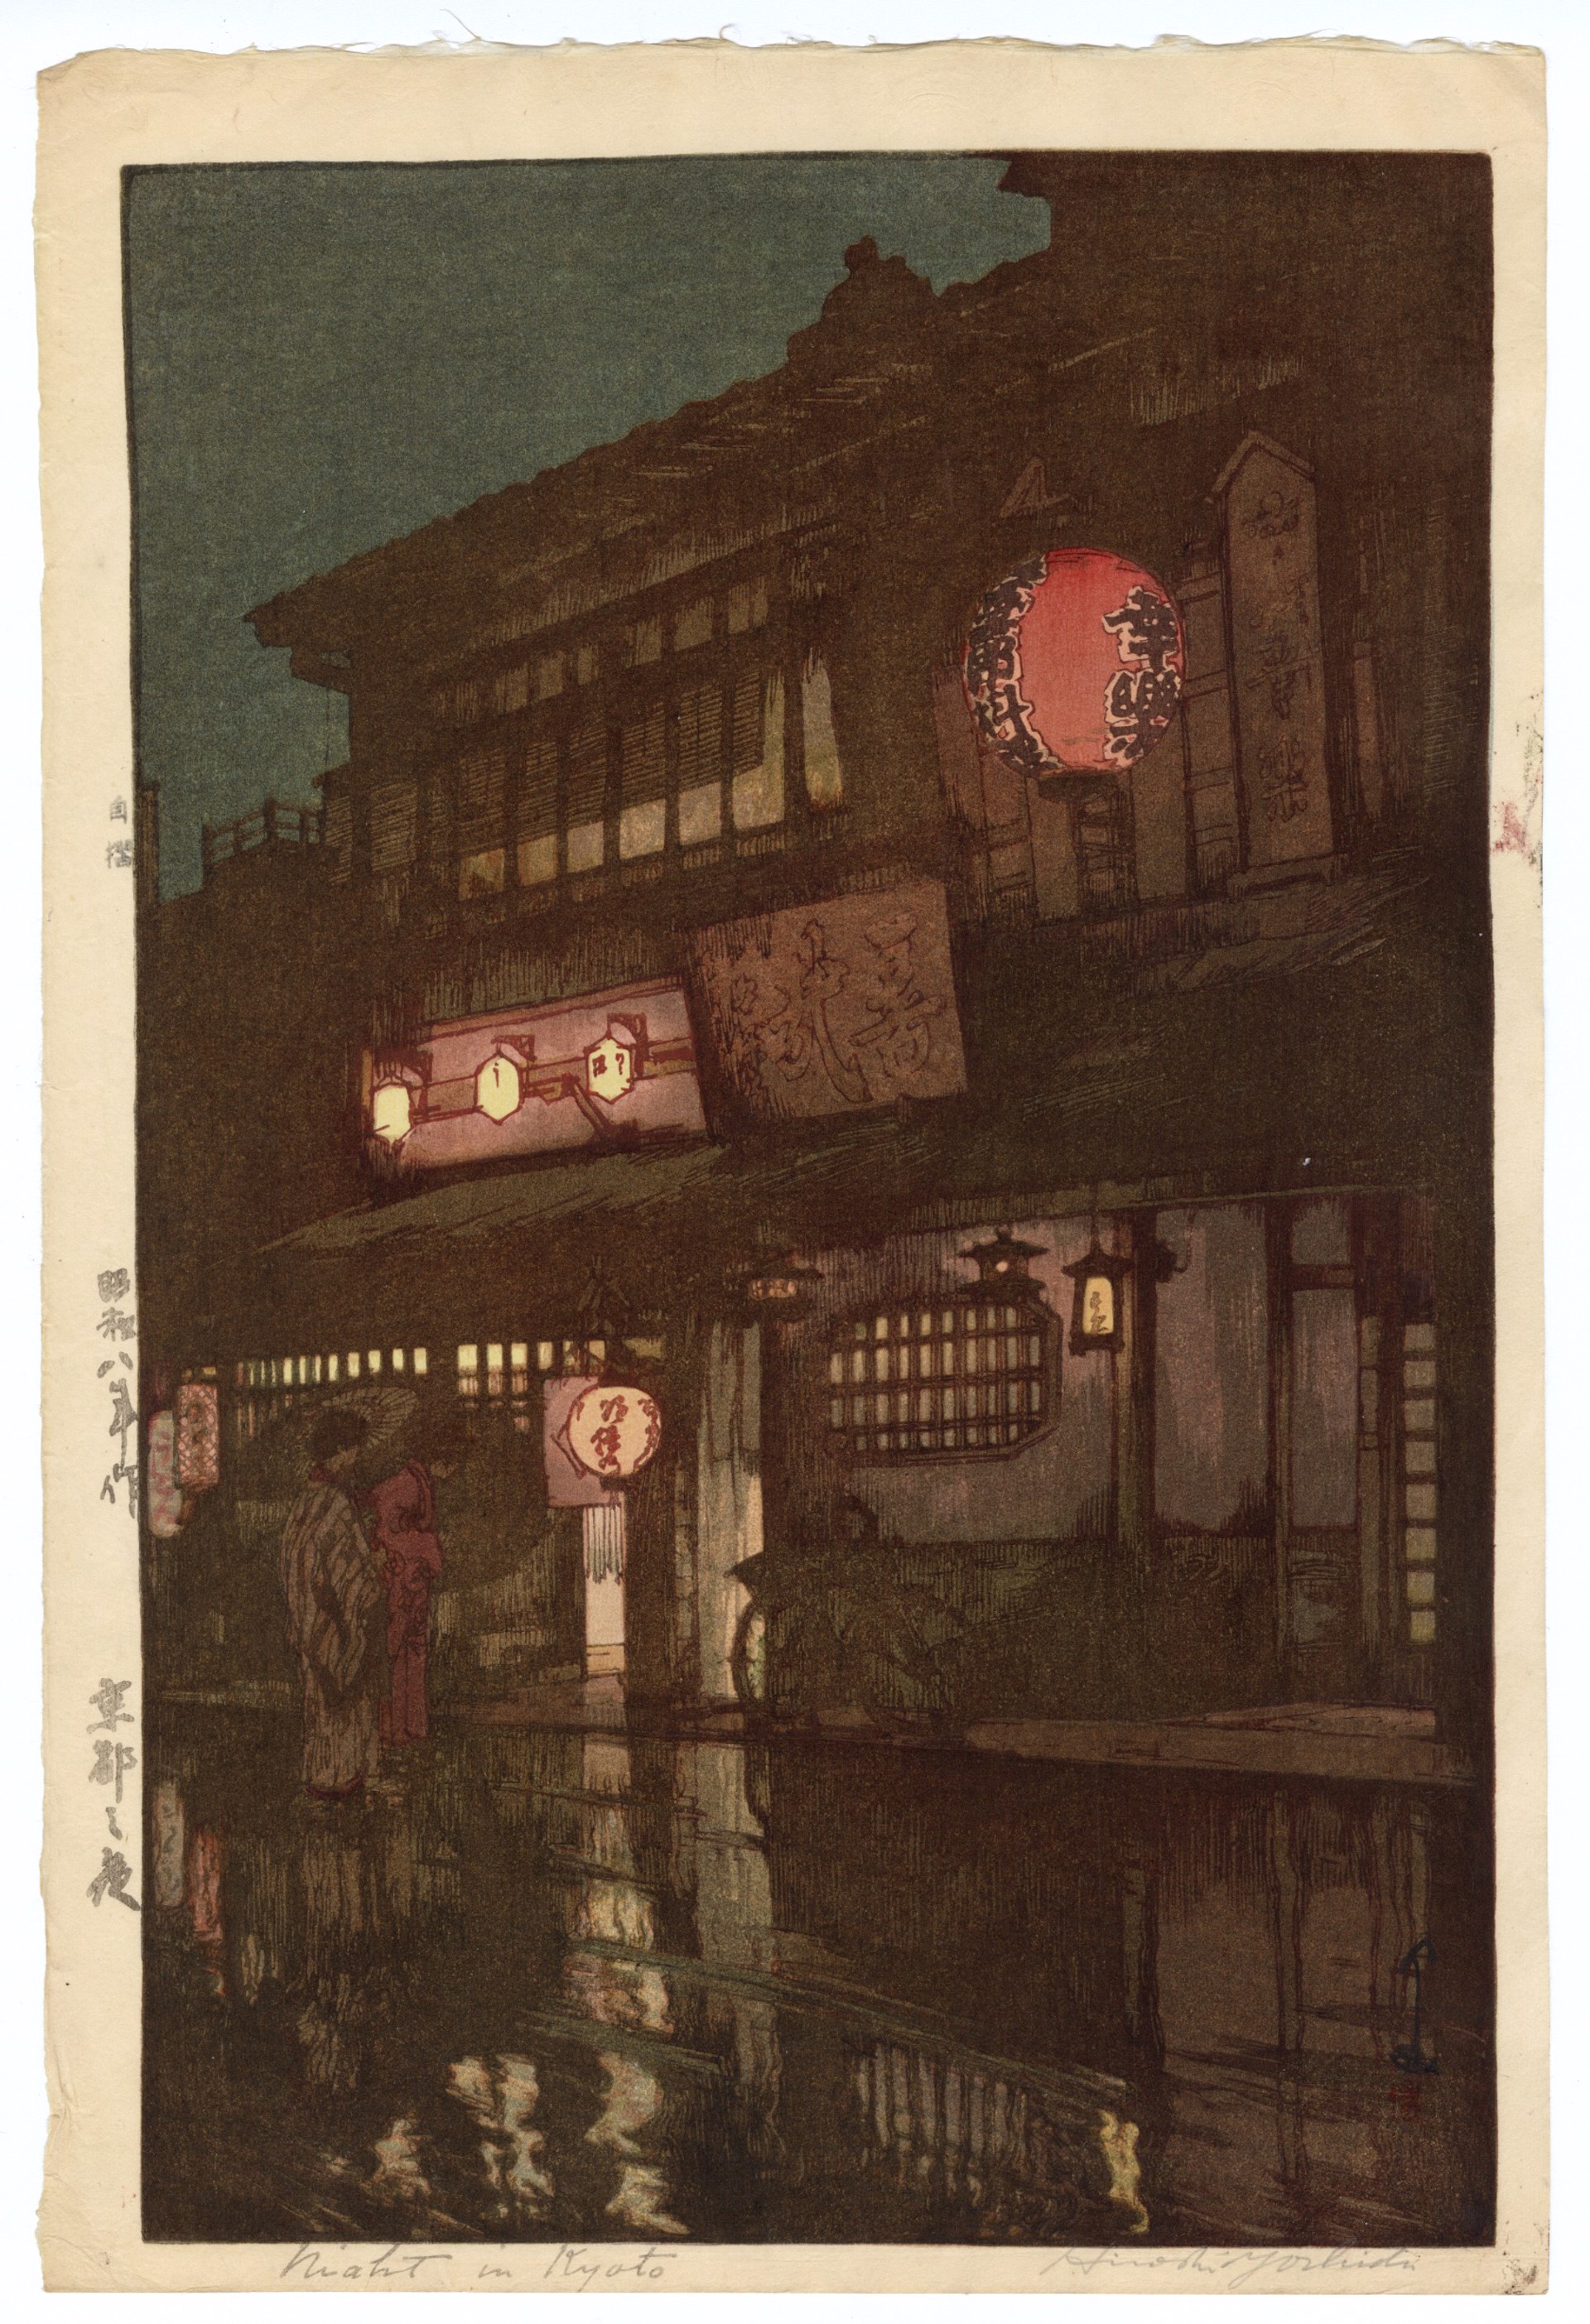 Night in Kyoto by Hiroshi Yoshida